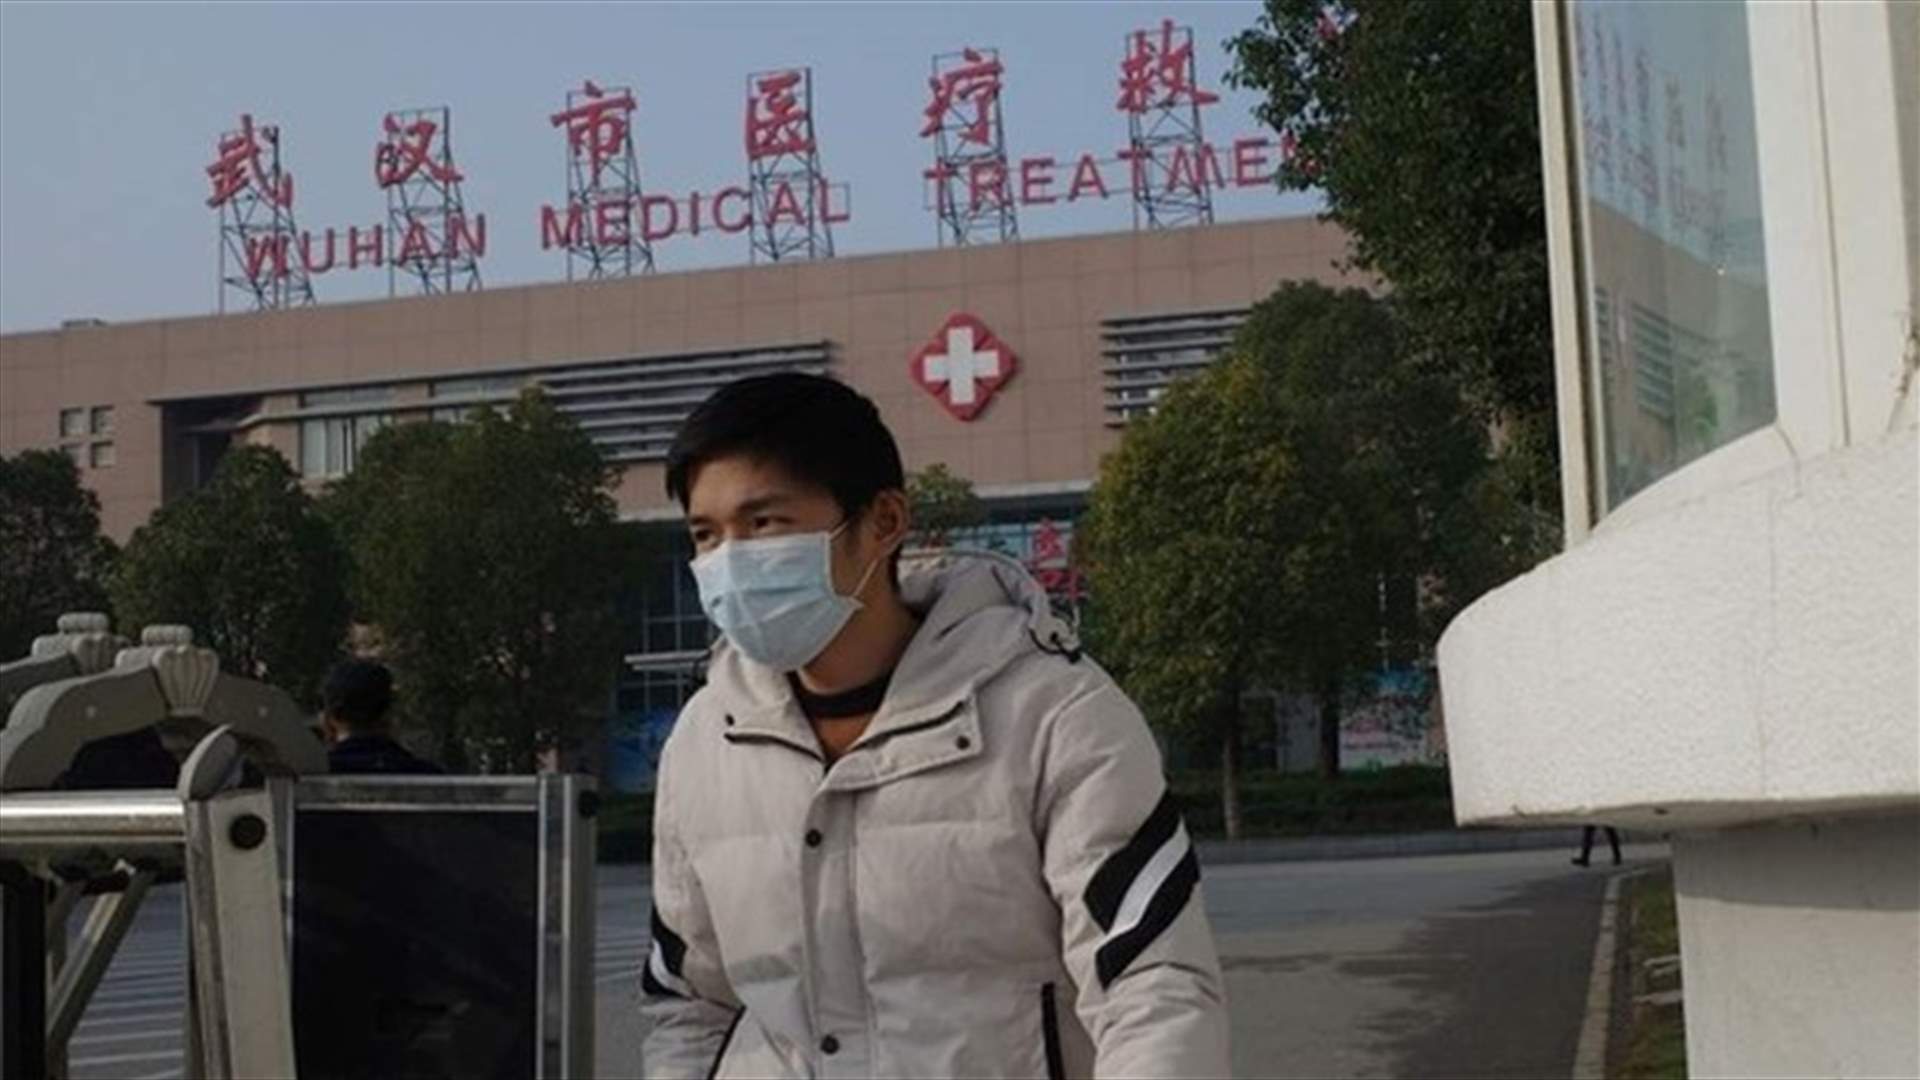 تسجيل ثاني حالة وفاة بفيروس غامض في الصين